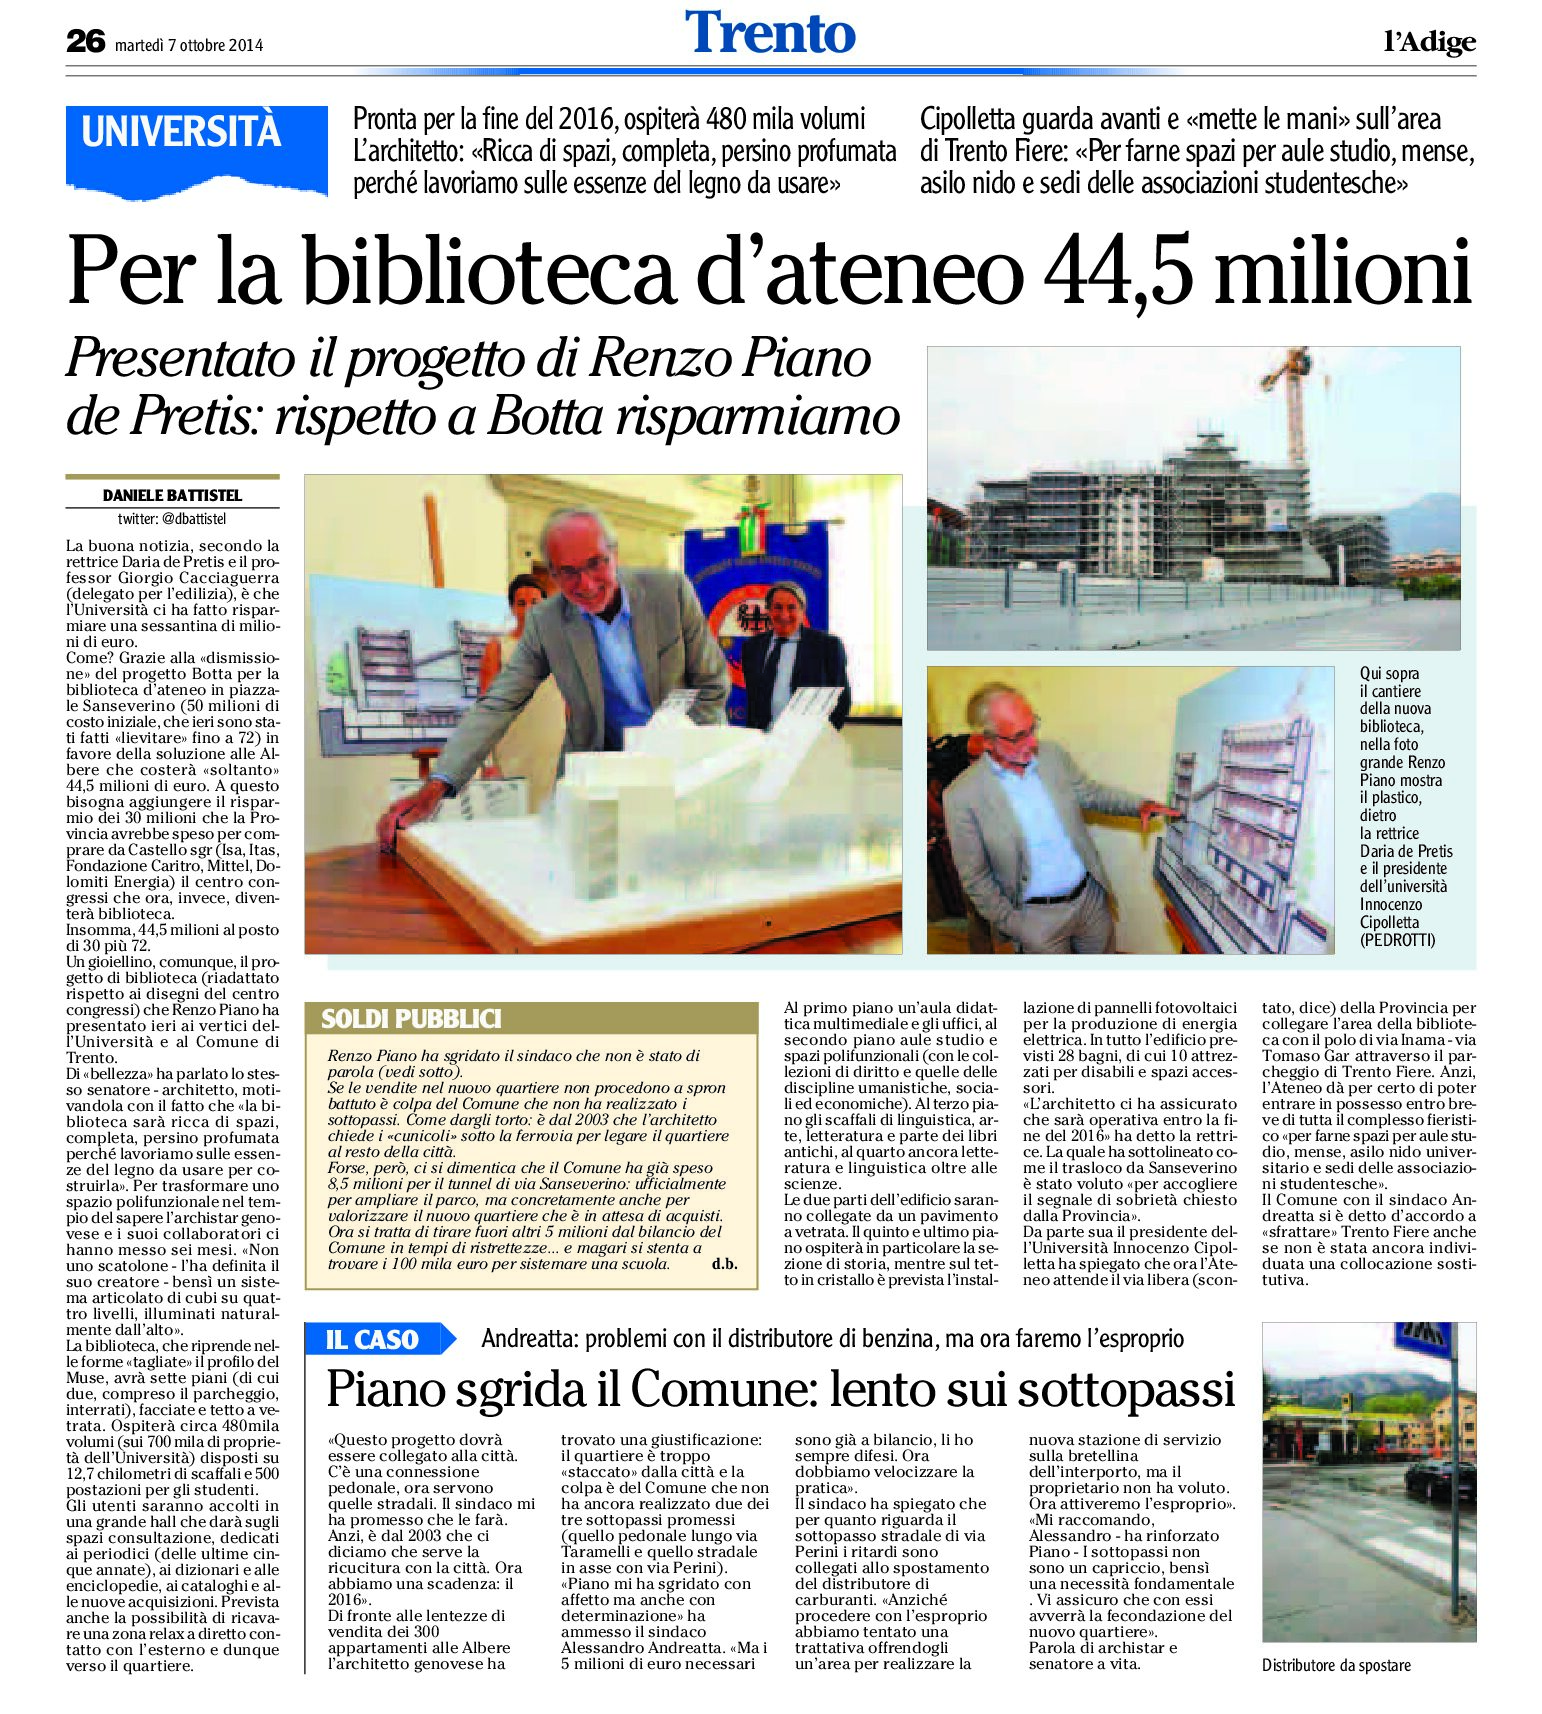 Trento, Albere: Renzo Piano e i costi della bibliotaca universitaria